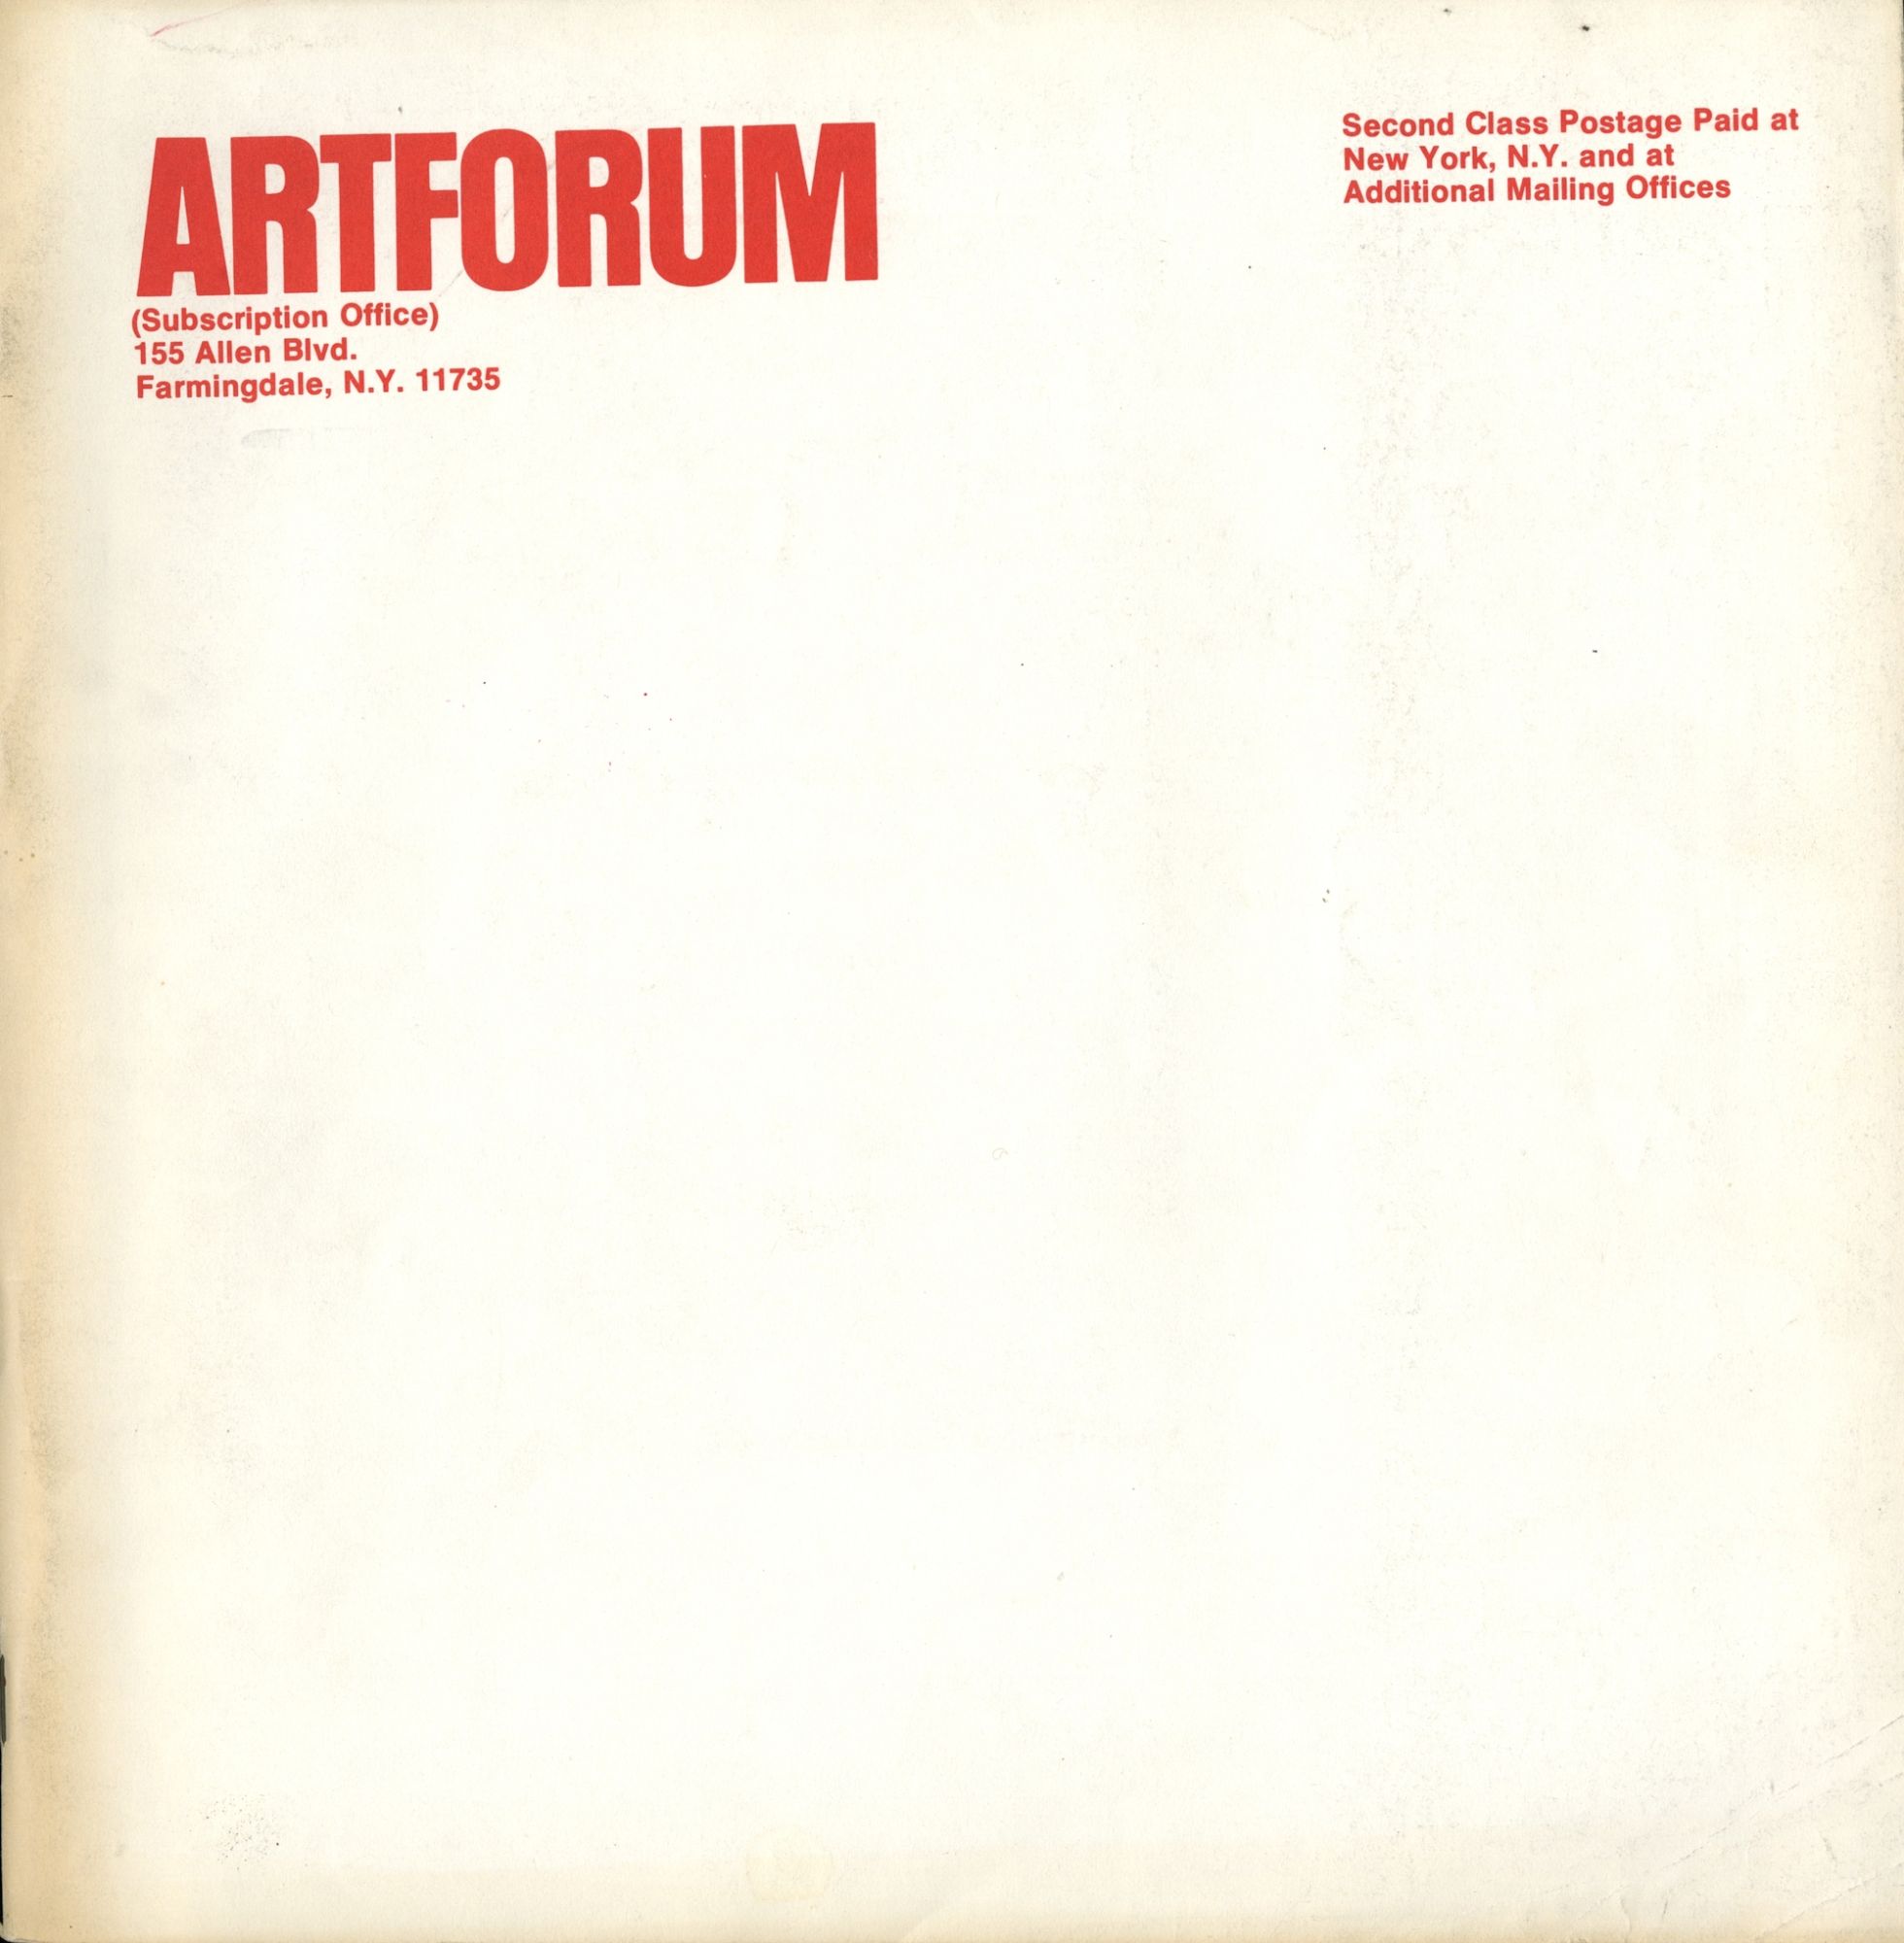 LANGFROID: A PROJECT FOR ARTFORUM BY HELMUT LANG – Artforum